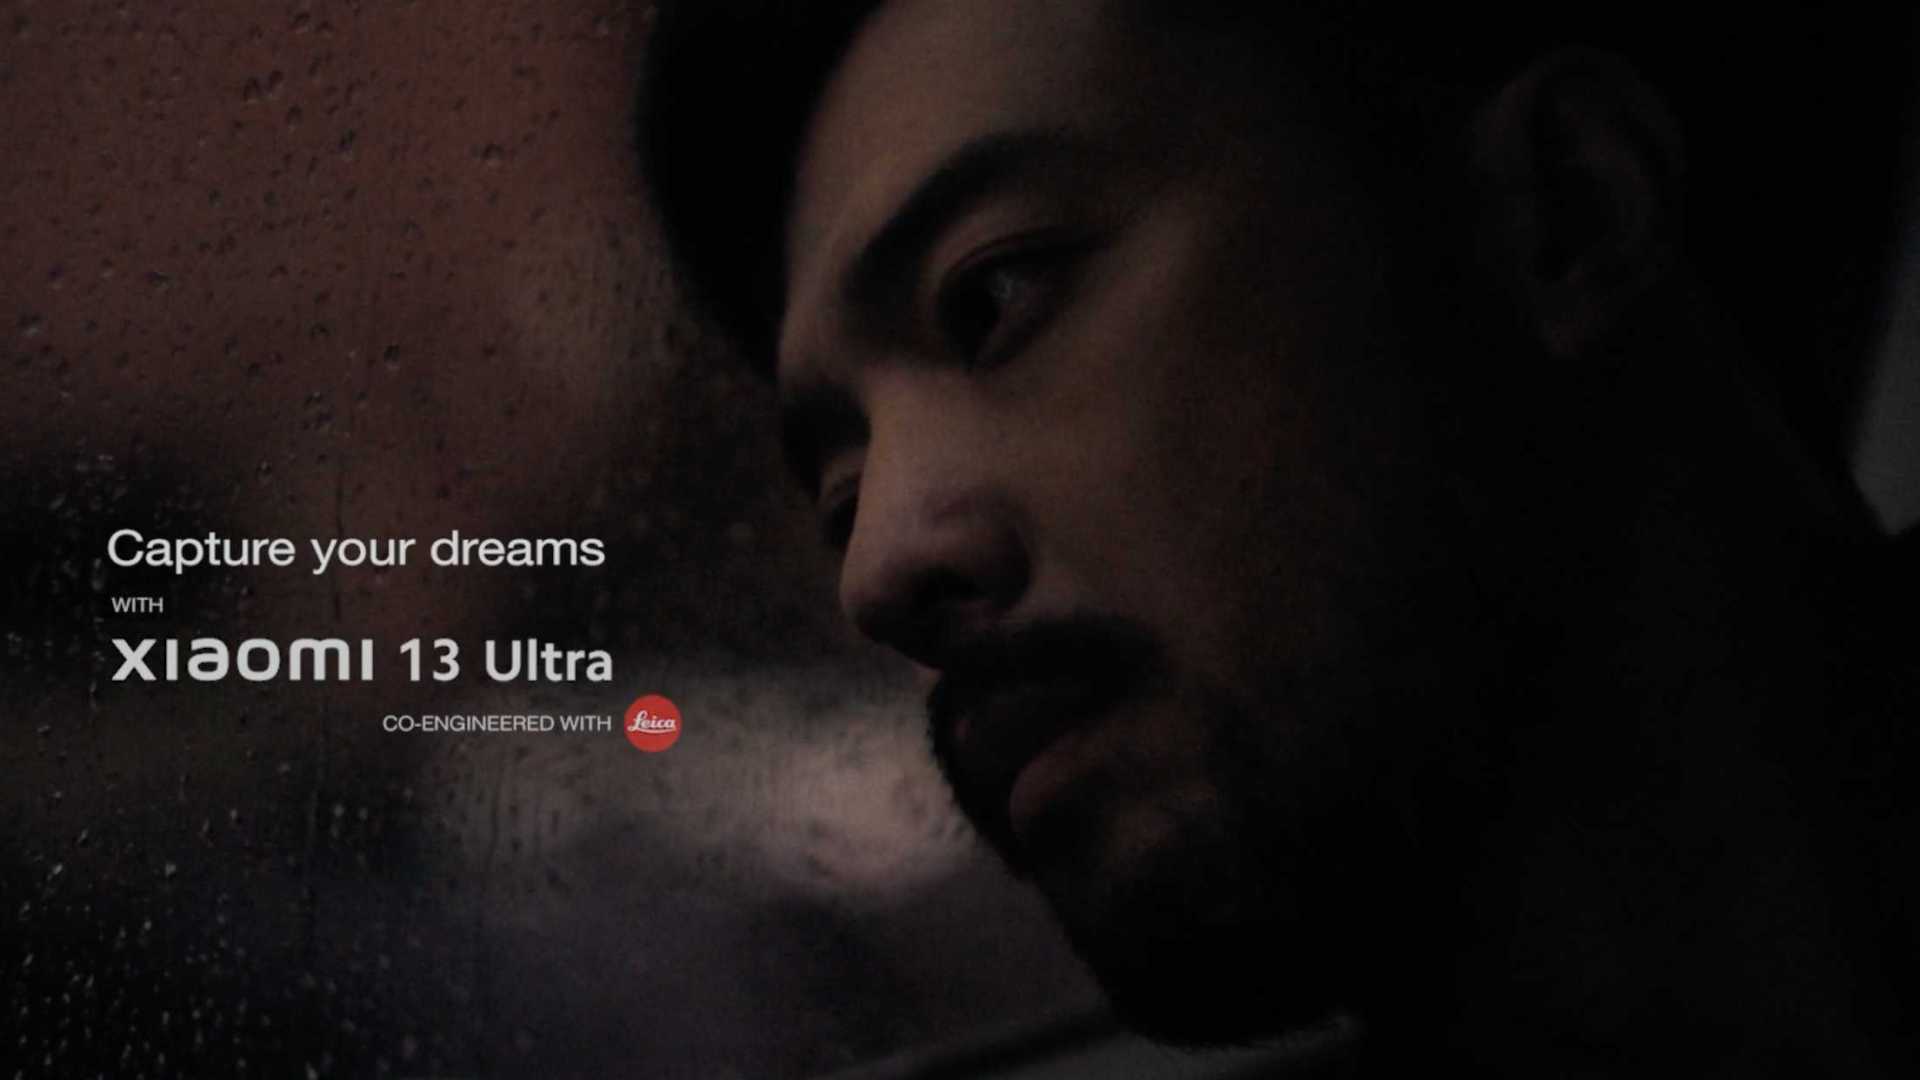 Xiaomi x Leica - Capture Your Dreams DC